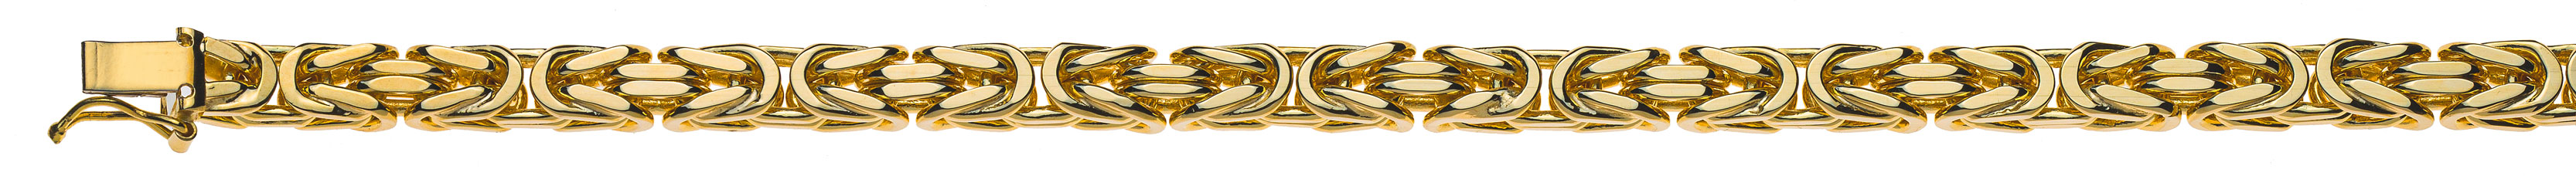 AURONOS Prestige Collier en or jaune 18K chaîne royale 45cm 5mm